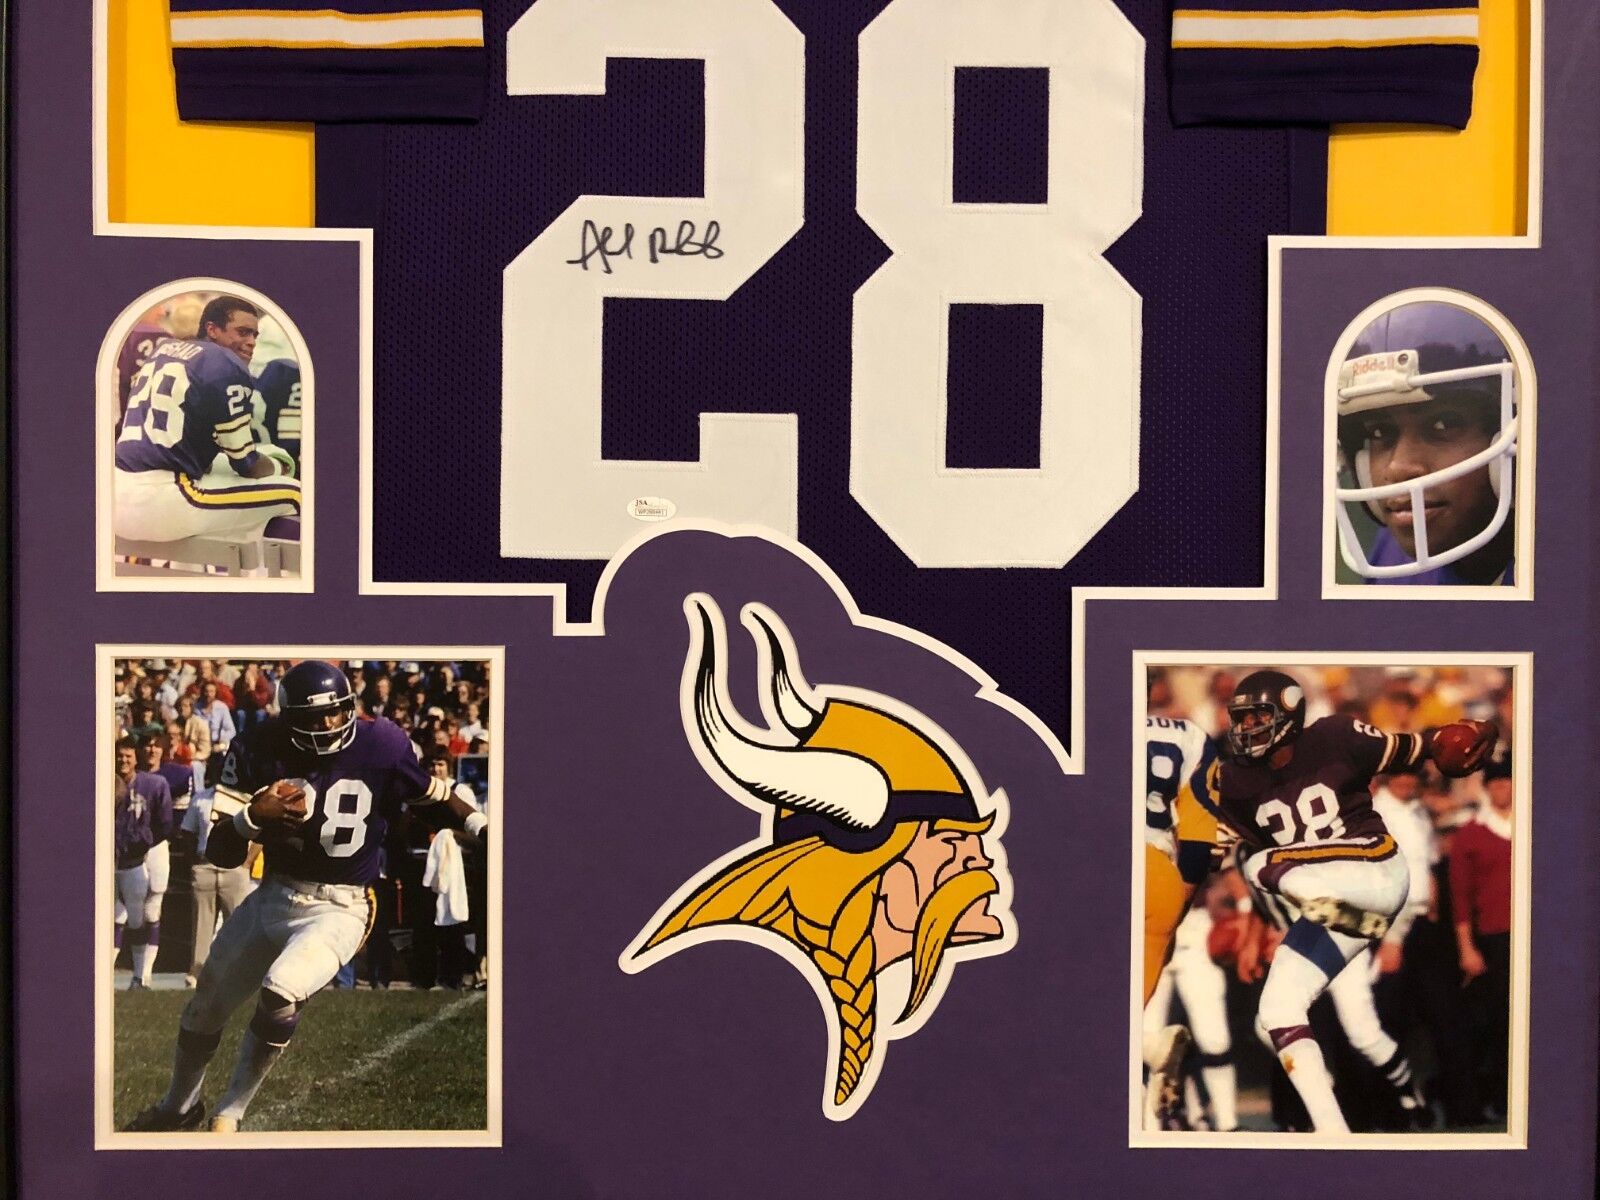 MVP Authentics Framed Minnesota Vikings Ahmad Rashad Autographed Signed Jersey Jsa Coa 450 sports jersey framing , jersey framing